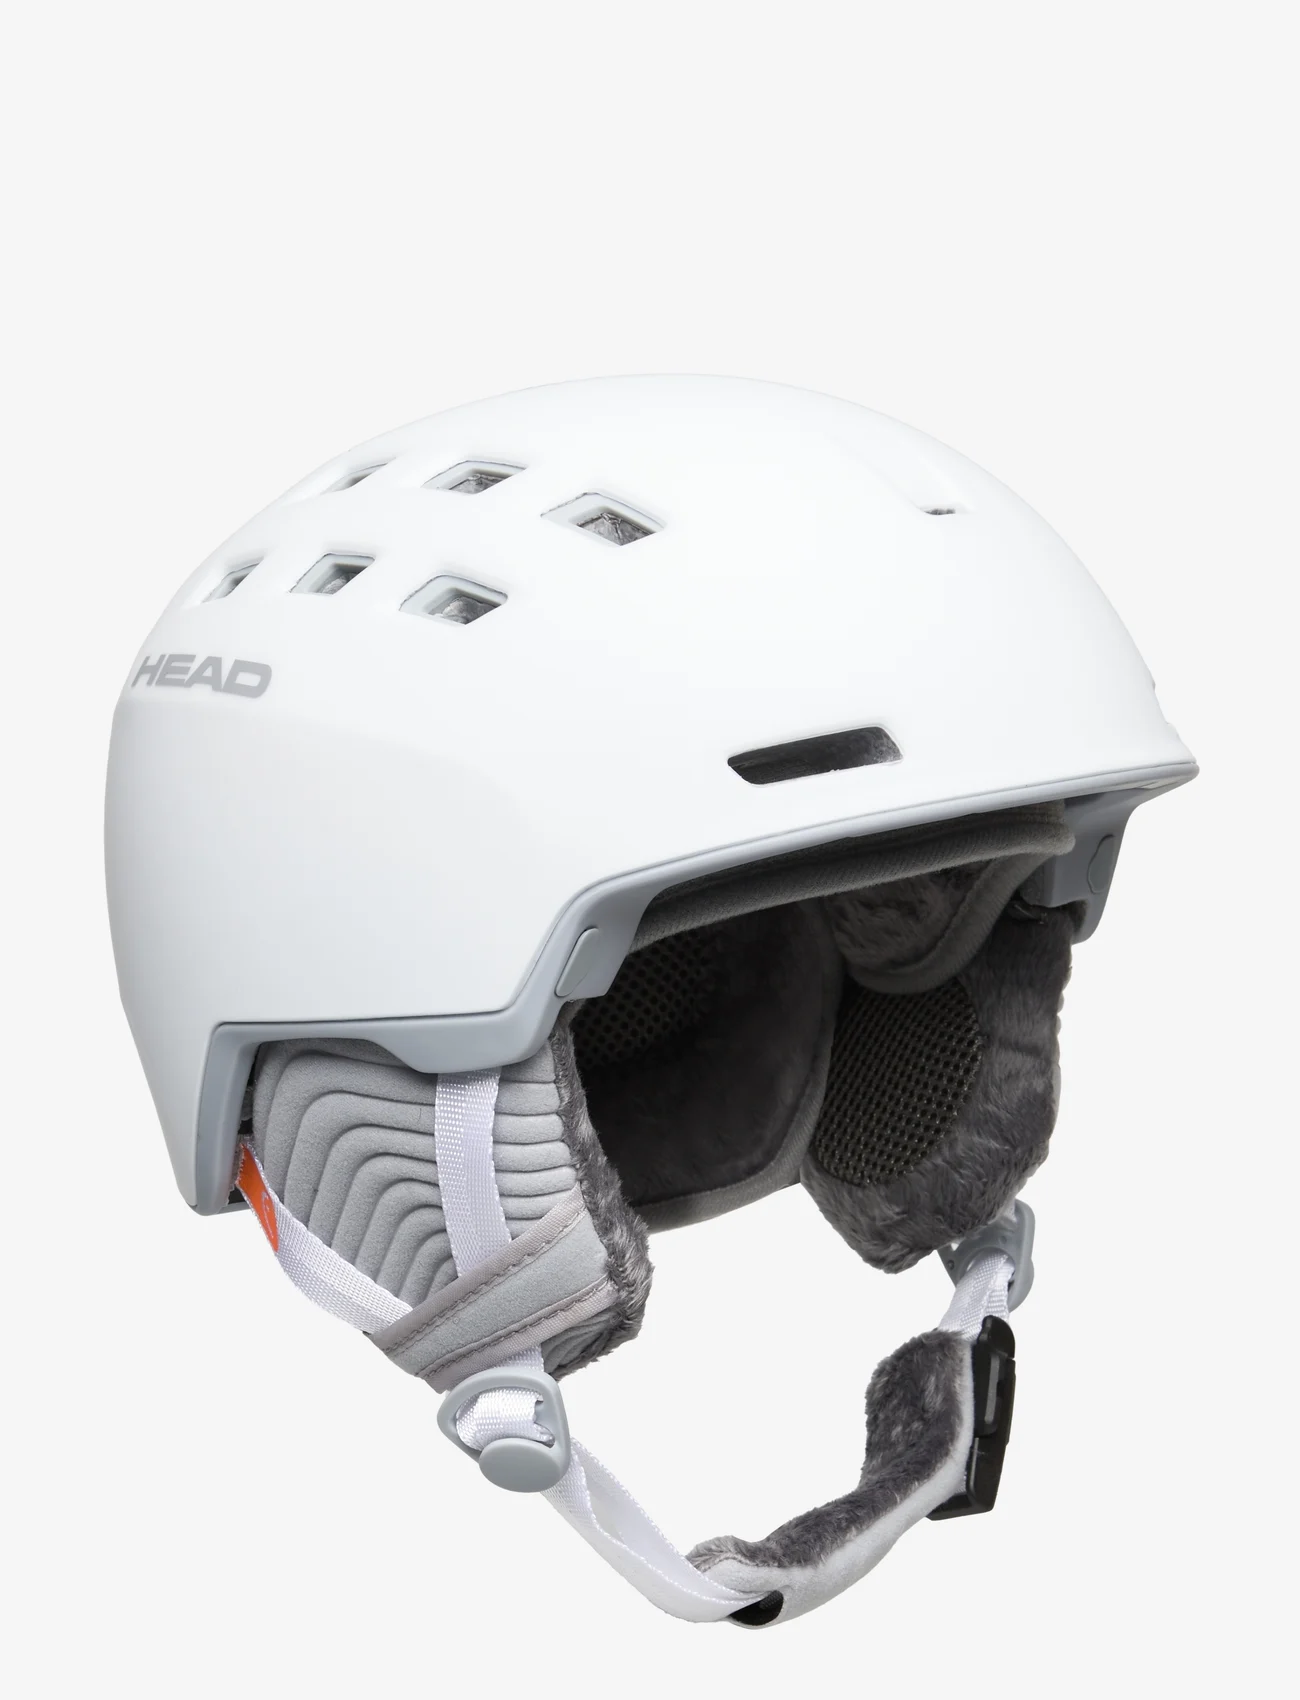 Head - RITA SKI & SNOWBOARD HELMET - sports equipment - white - 0